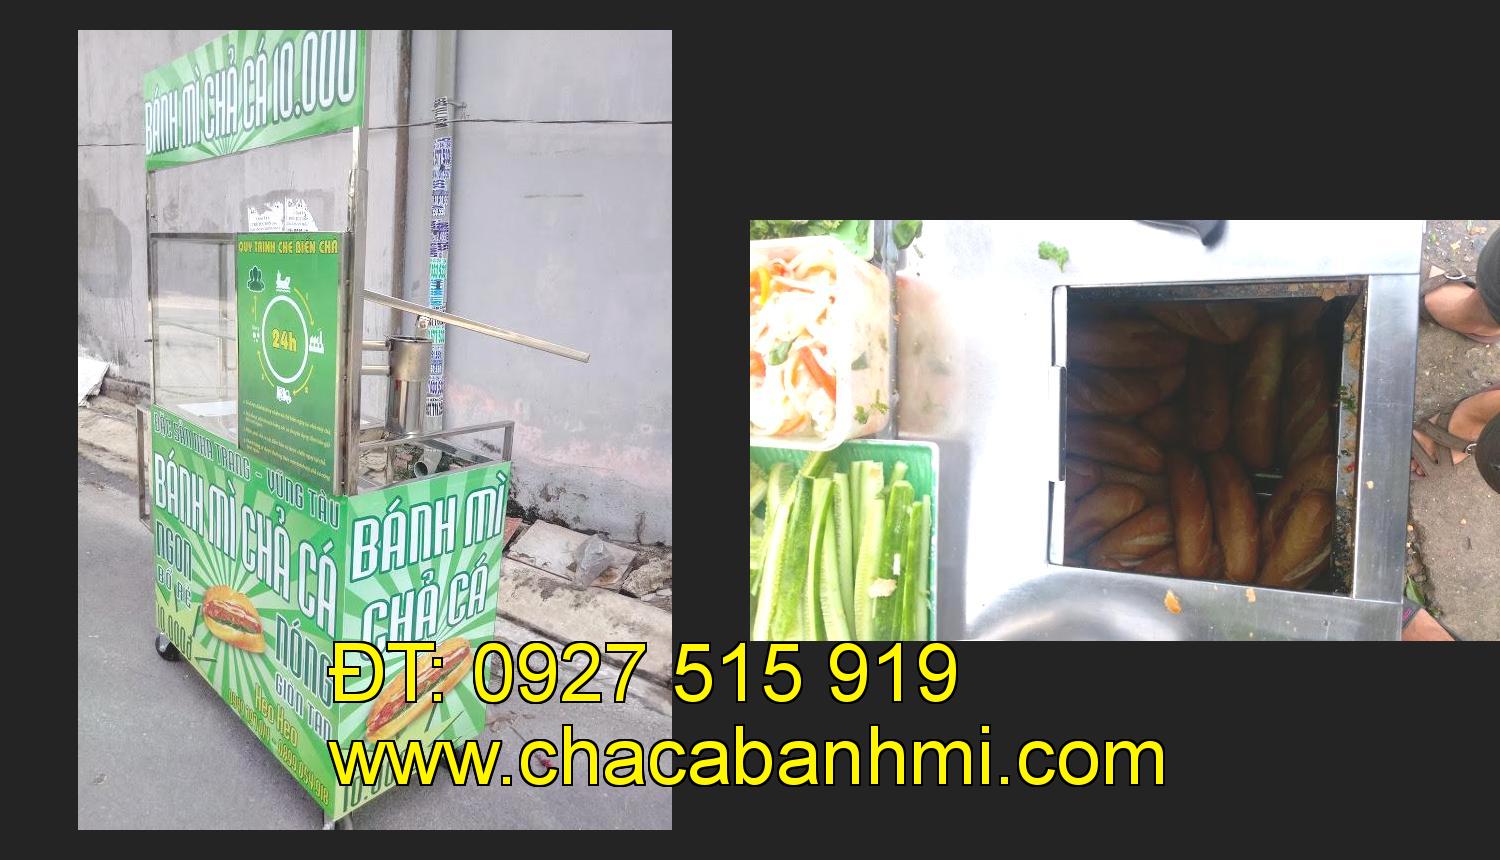 Bán xe bánh mì chả cá tại tỉnh Bến Tre